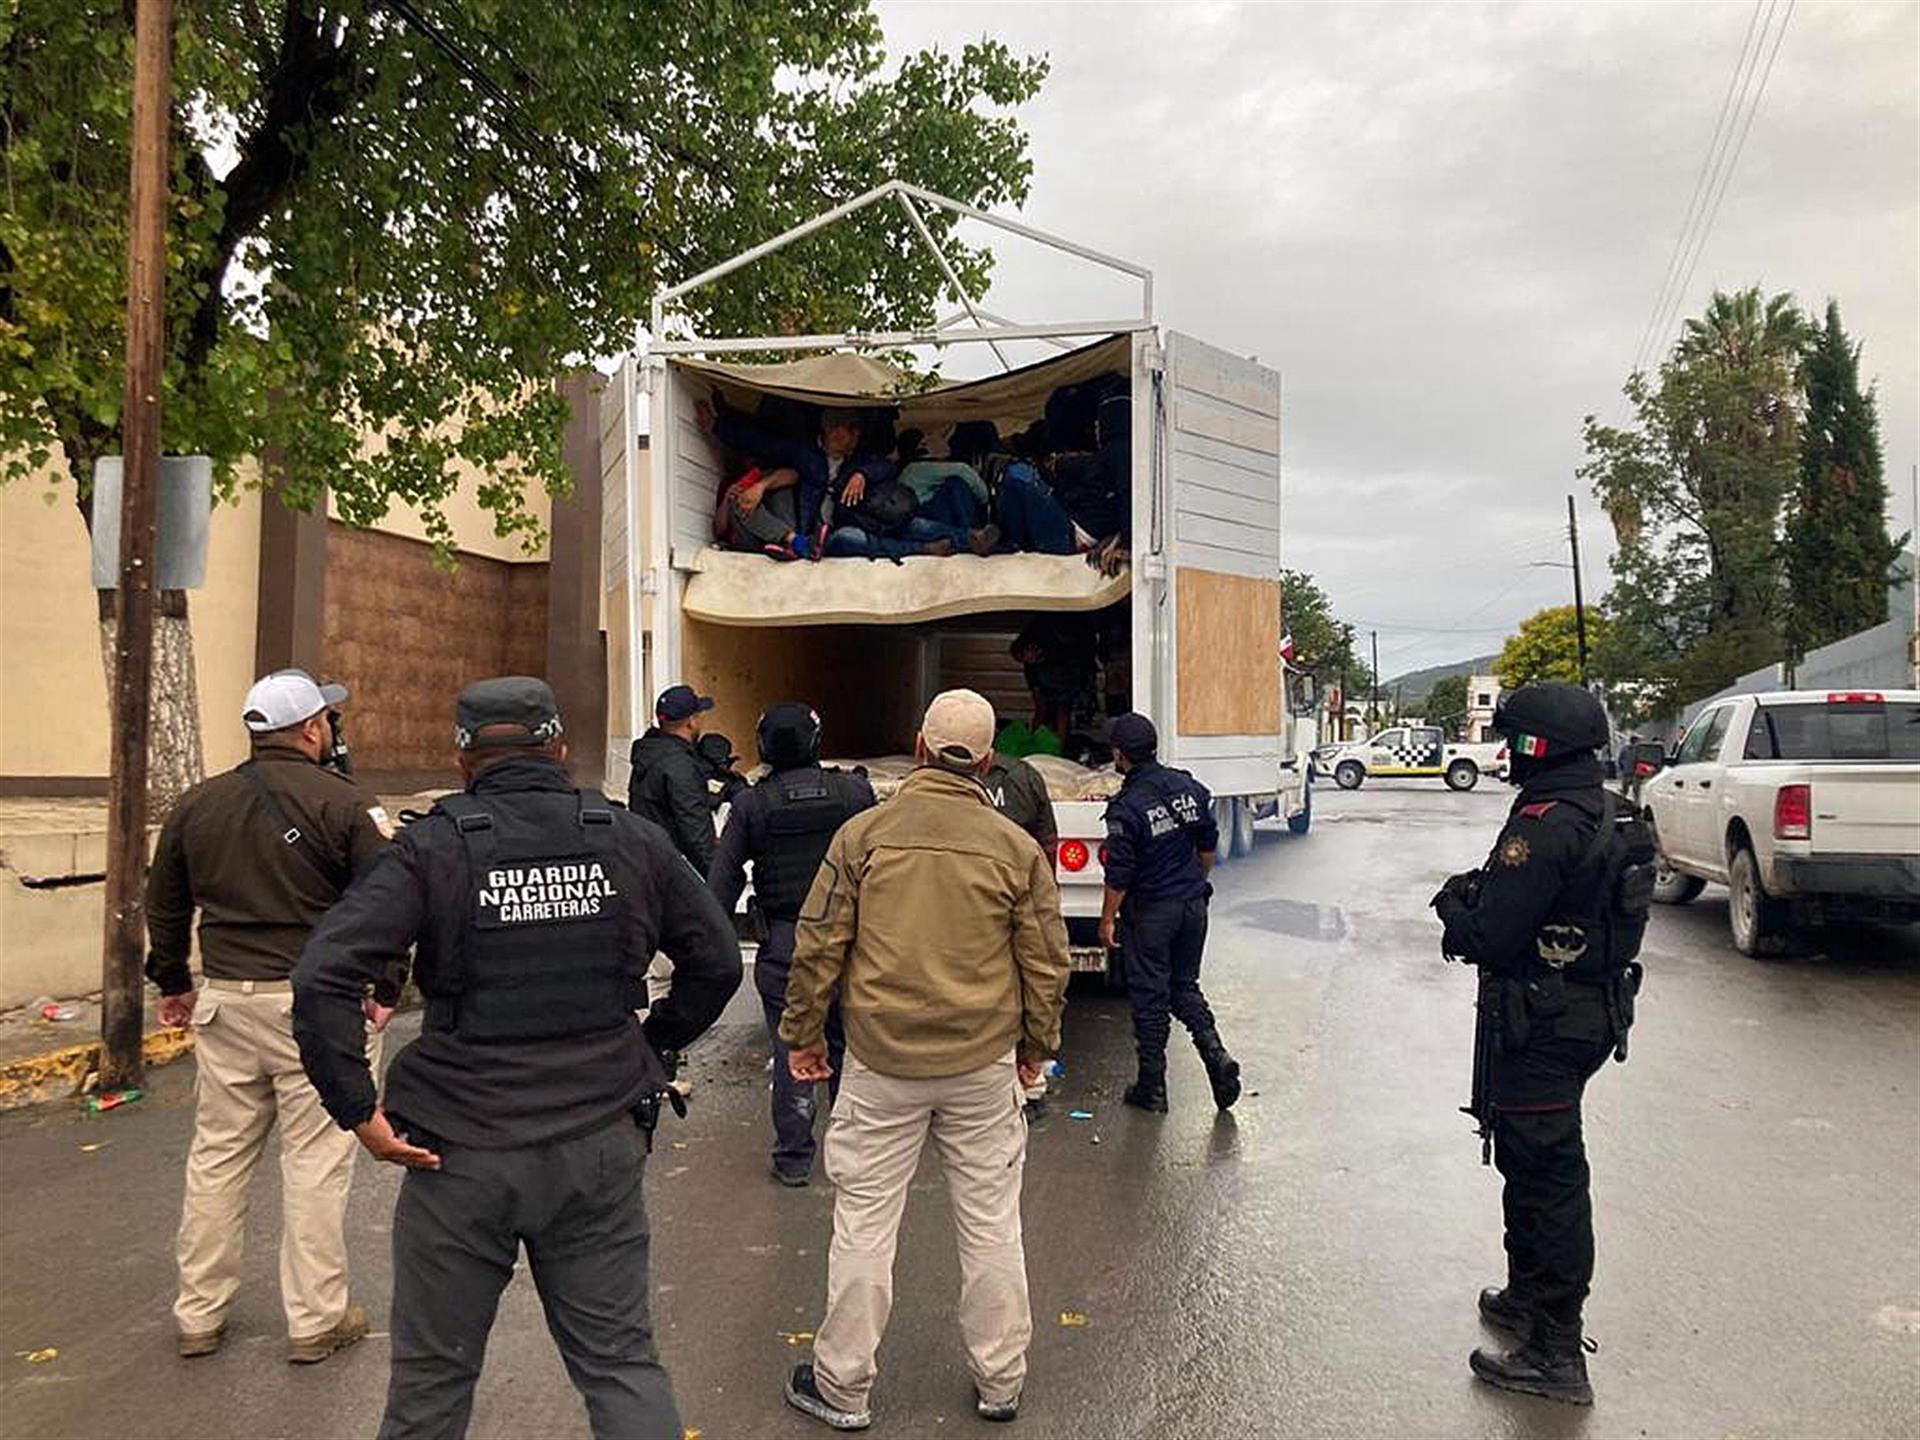 Fotografía cedida hoy, por la Guardia Nacional (GN), donde se observa a migrantes rescatados del interior de un camión en Monterrey, Nuevo León (México). EFE/Guardia Nacional/SOLO USO EDITORIAL/SOLO DISPONIBLE PARA ILUSTRAR LA NOTICIA QUE ACOMPAÑA (CRÉDITO OBLIGATORIO) MEJOR CALIDAD POSIBLE
